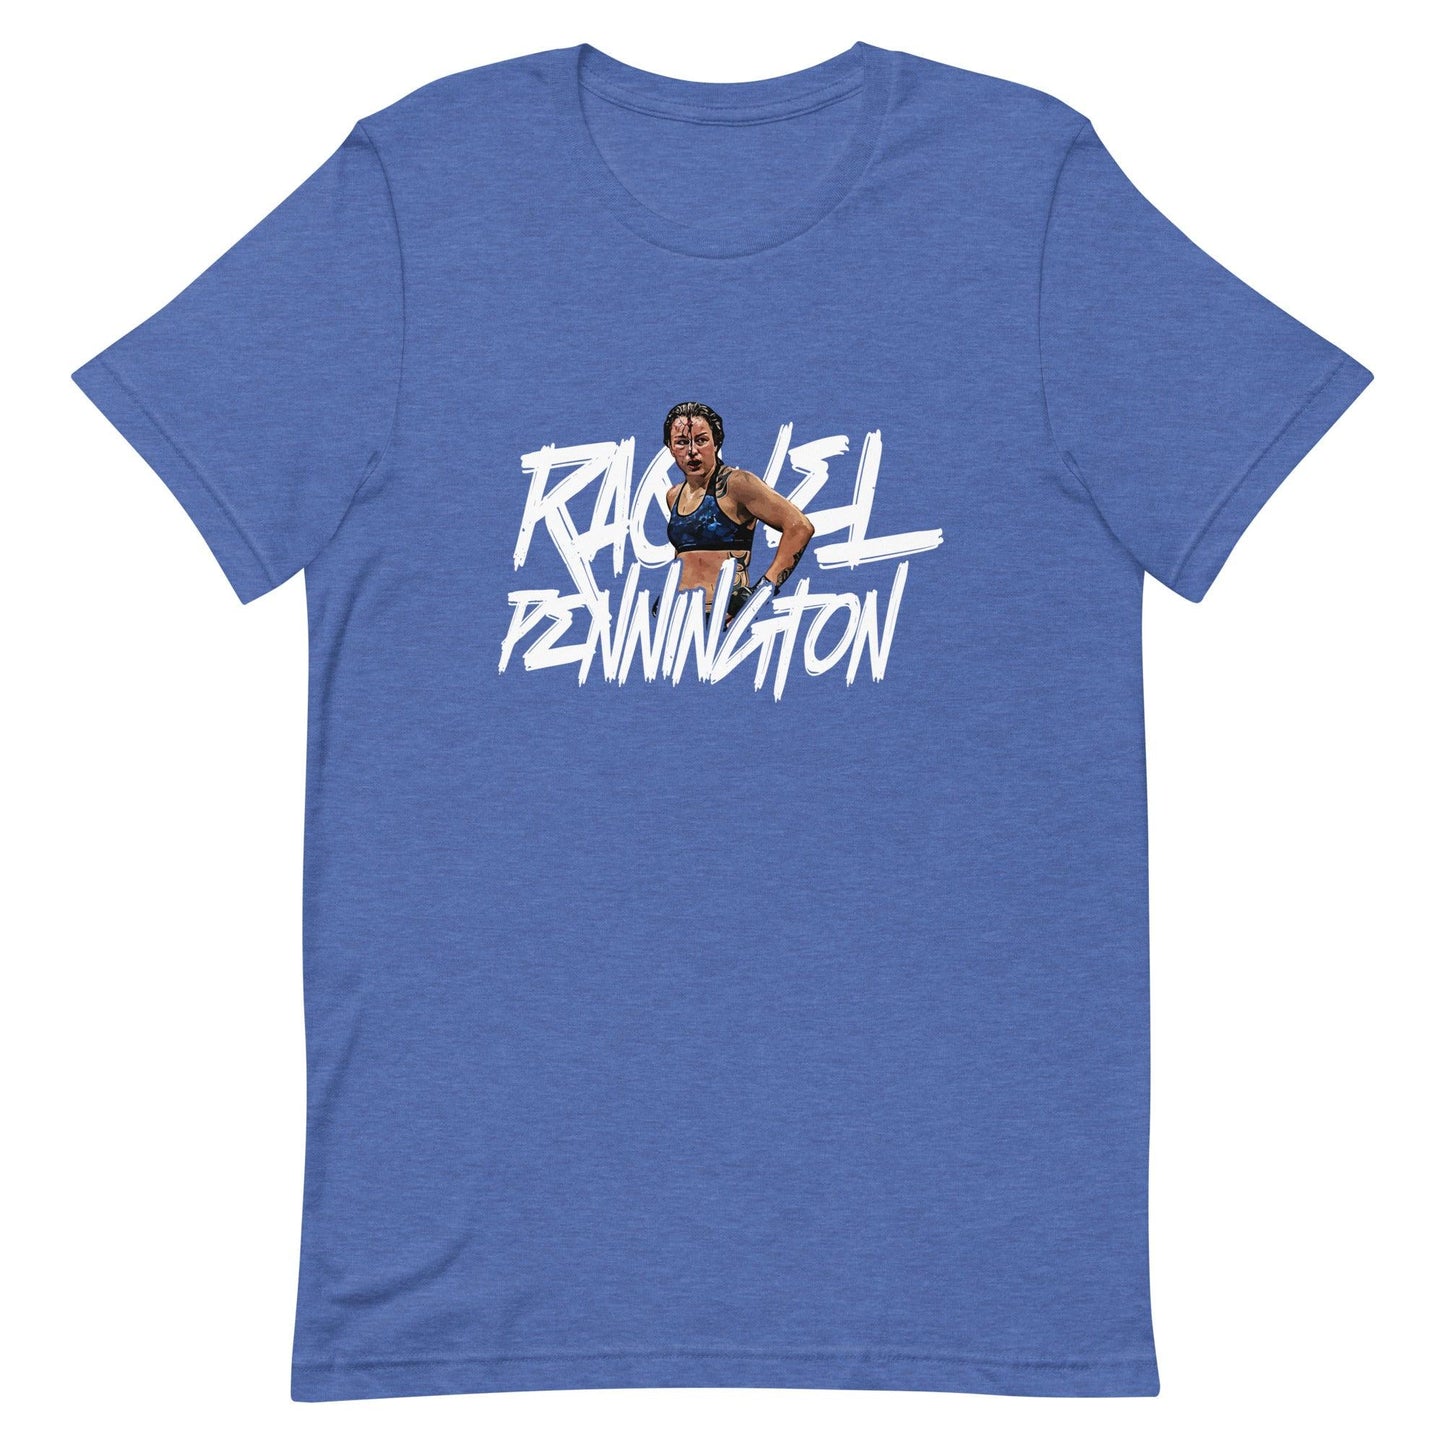 Raquel Pennington "War" t-shirt - Fan Arch